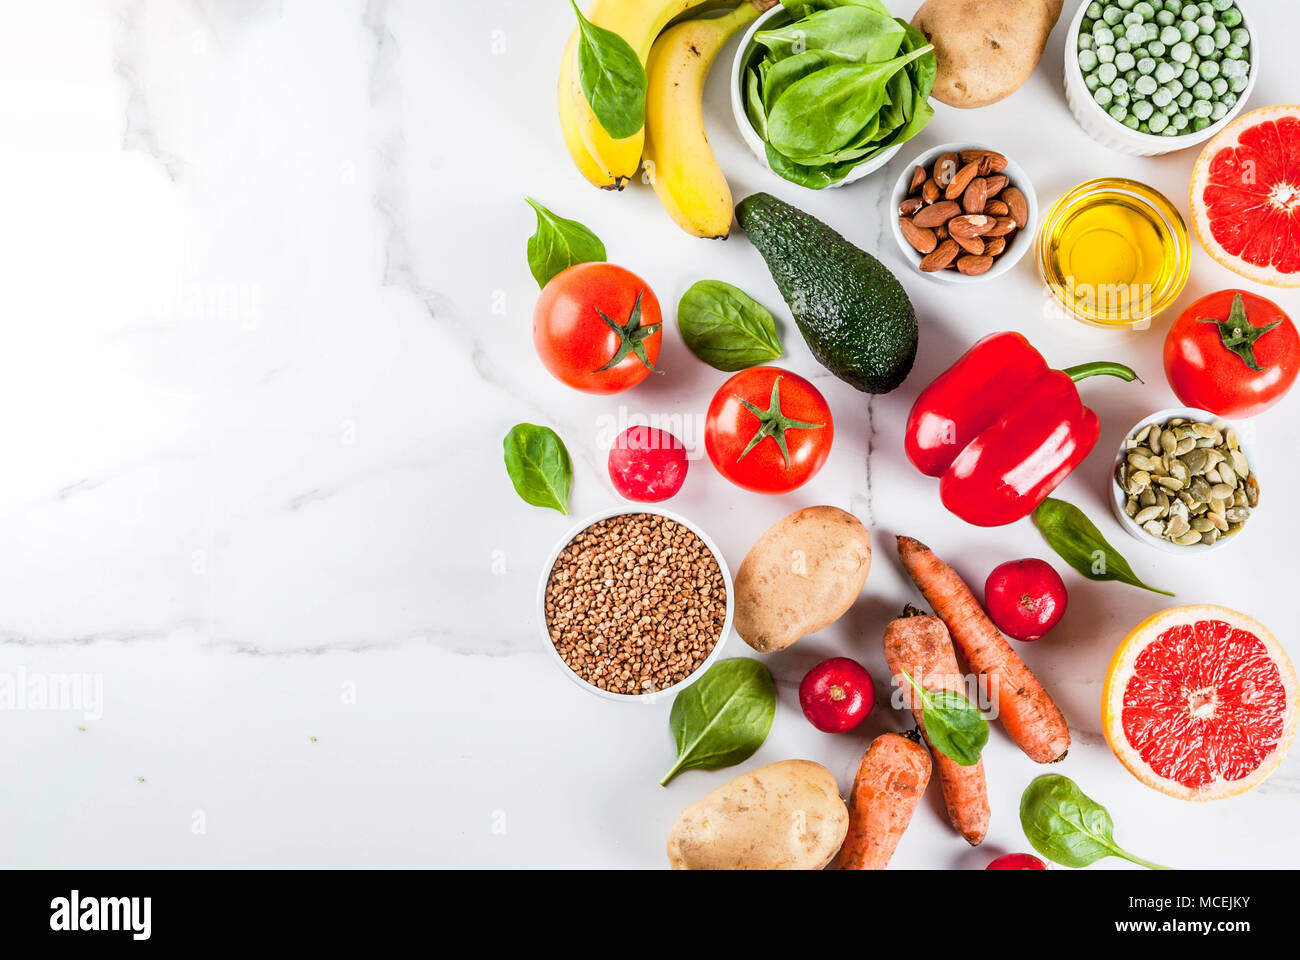 Cibo sano sfondo, trendy dieta alcalina prodotti - frutta, verdura, cereali, noci. oli, in marmo bianco sopra lo sfondo Foto Stock